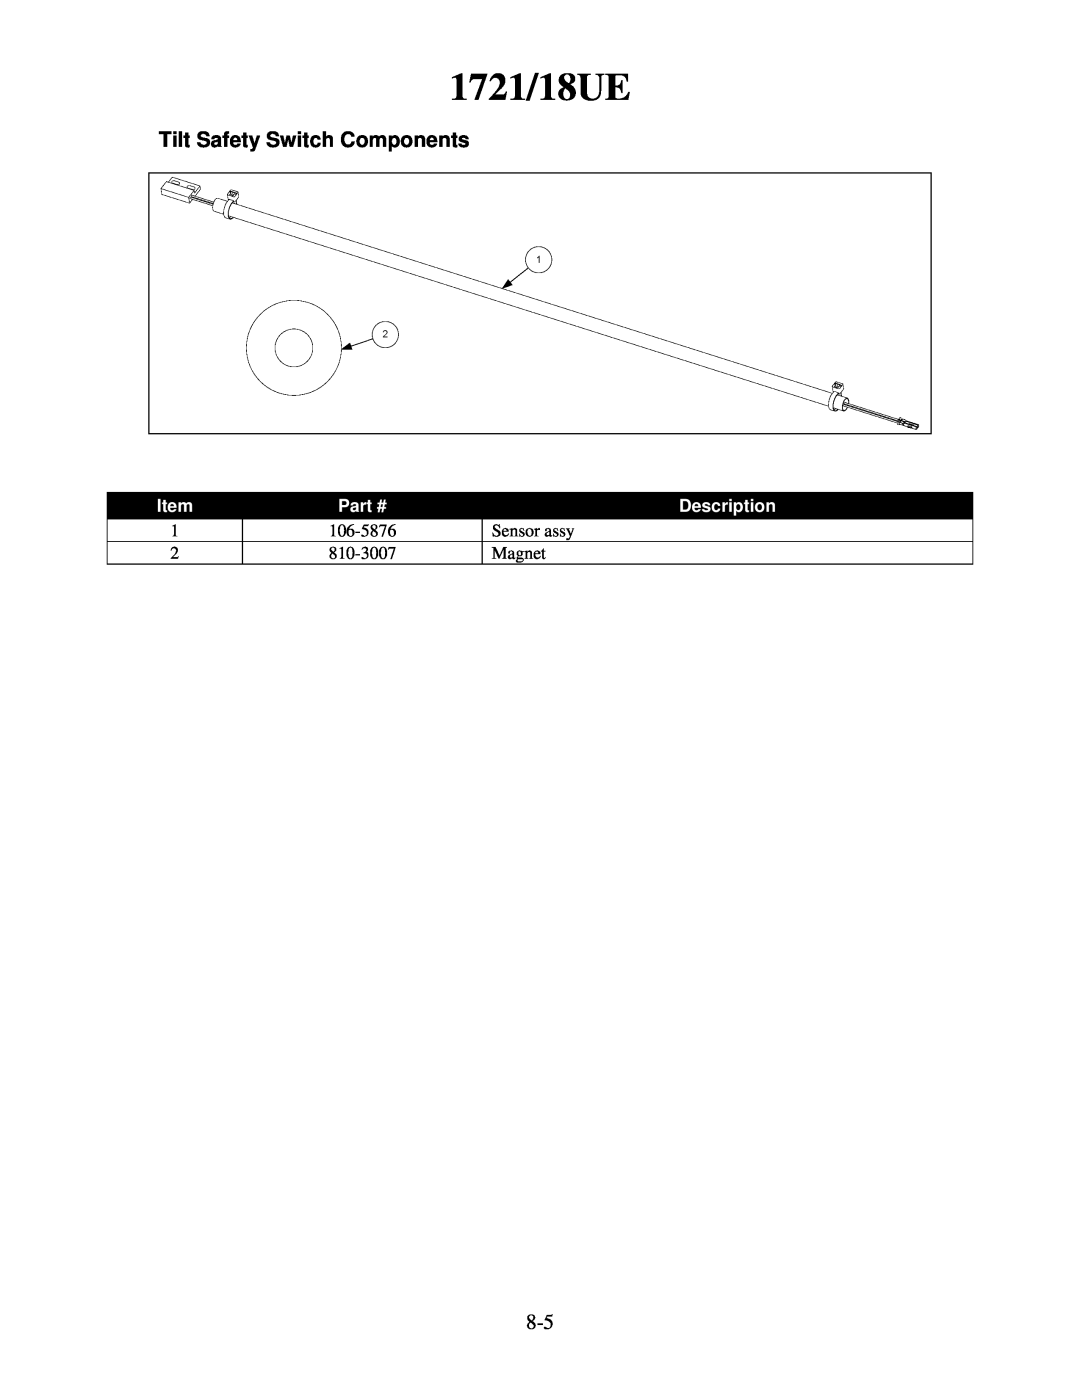 Frymaster H55 manual 1721/18UE, Tilt Safety Switch Components, Description, 106-5876, Sensor assy, 810-3007, Magnet 